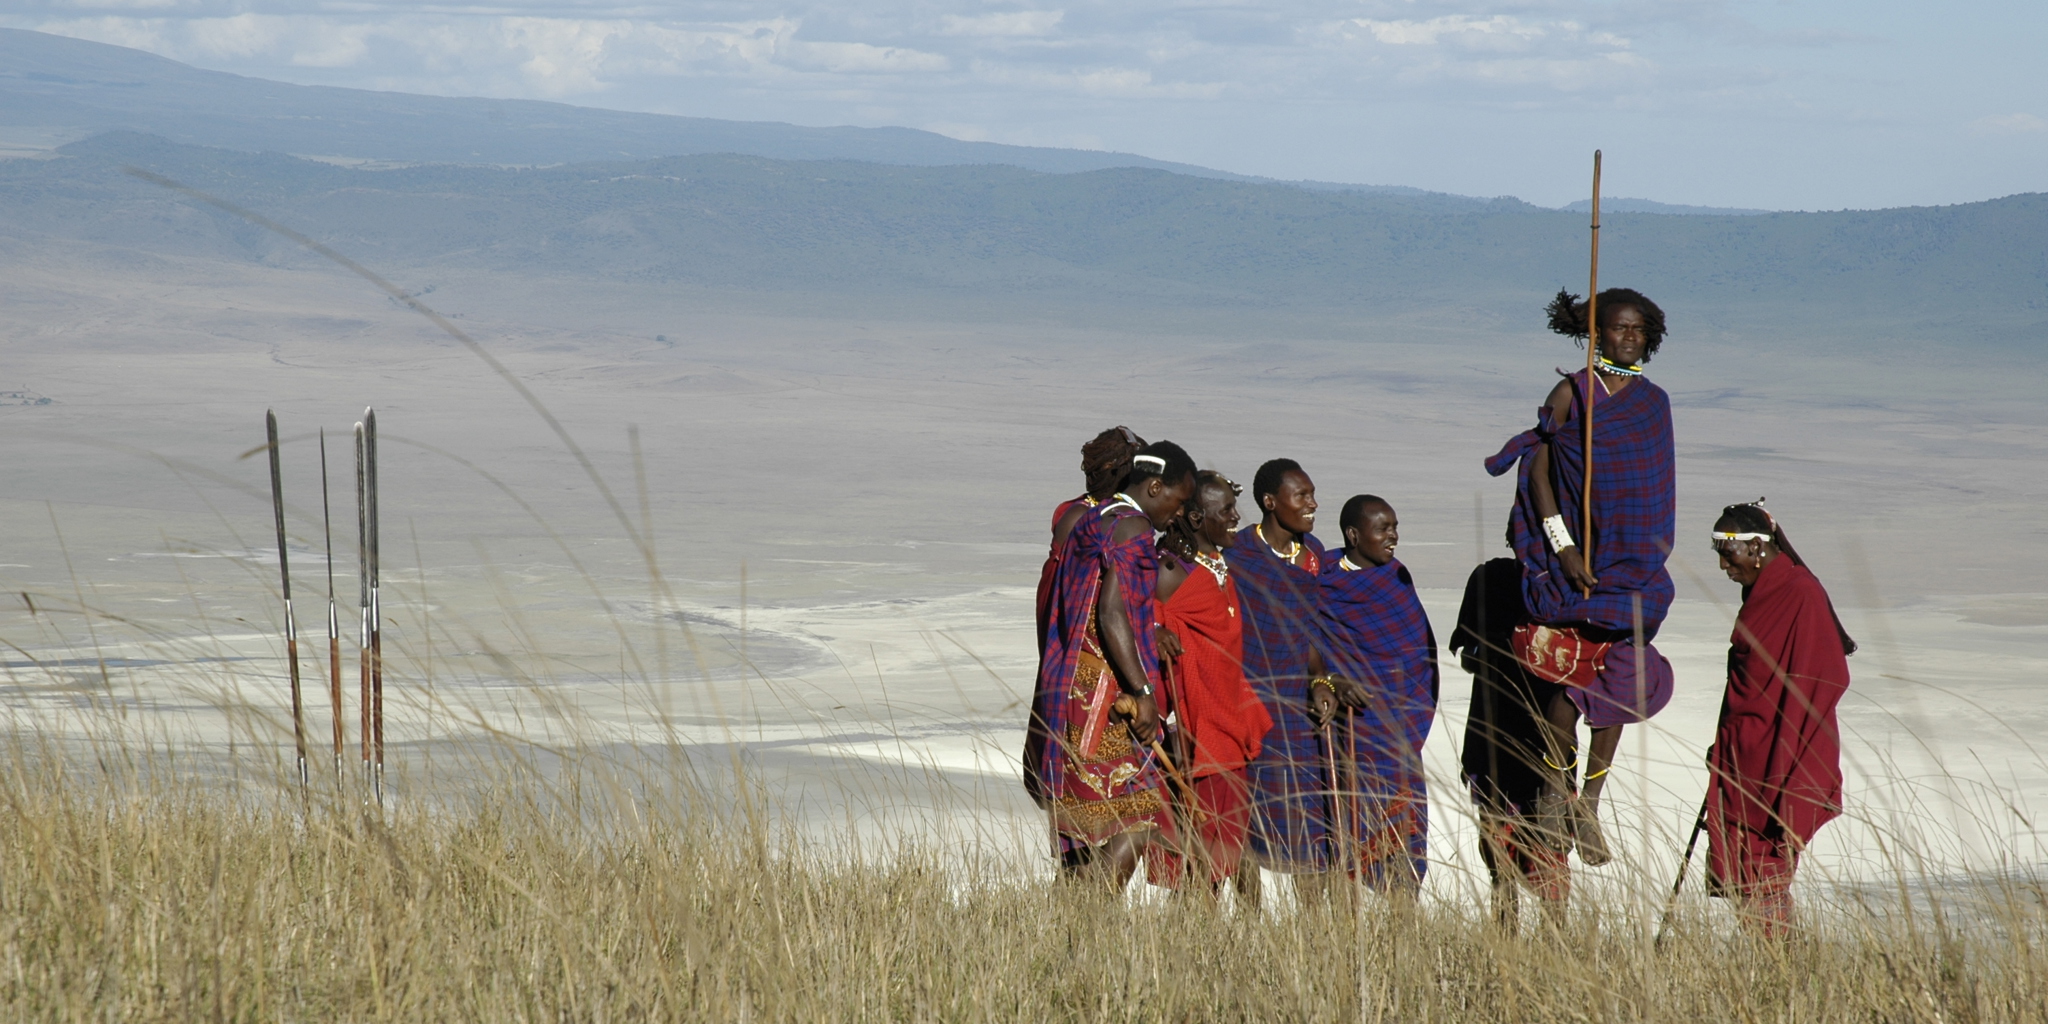 Jumping with the Maasai, Ngorongoro